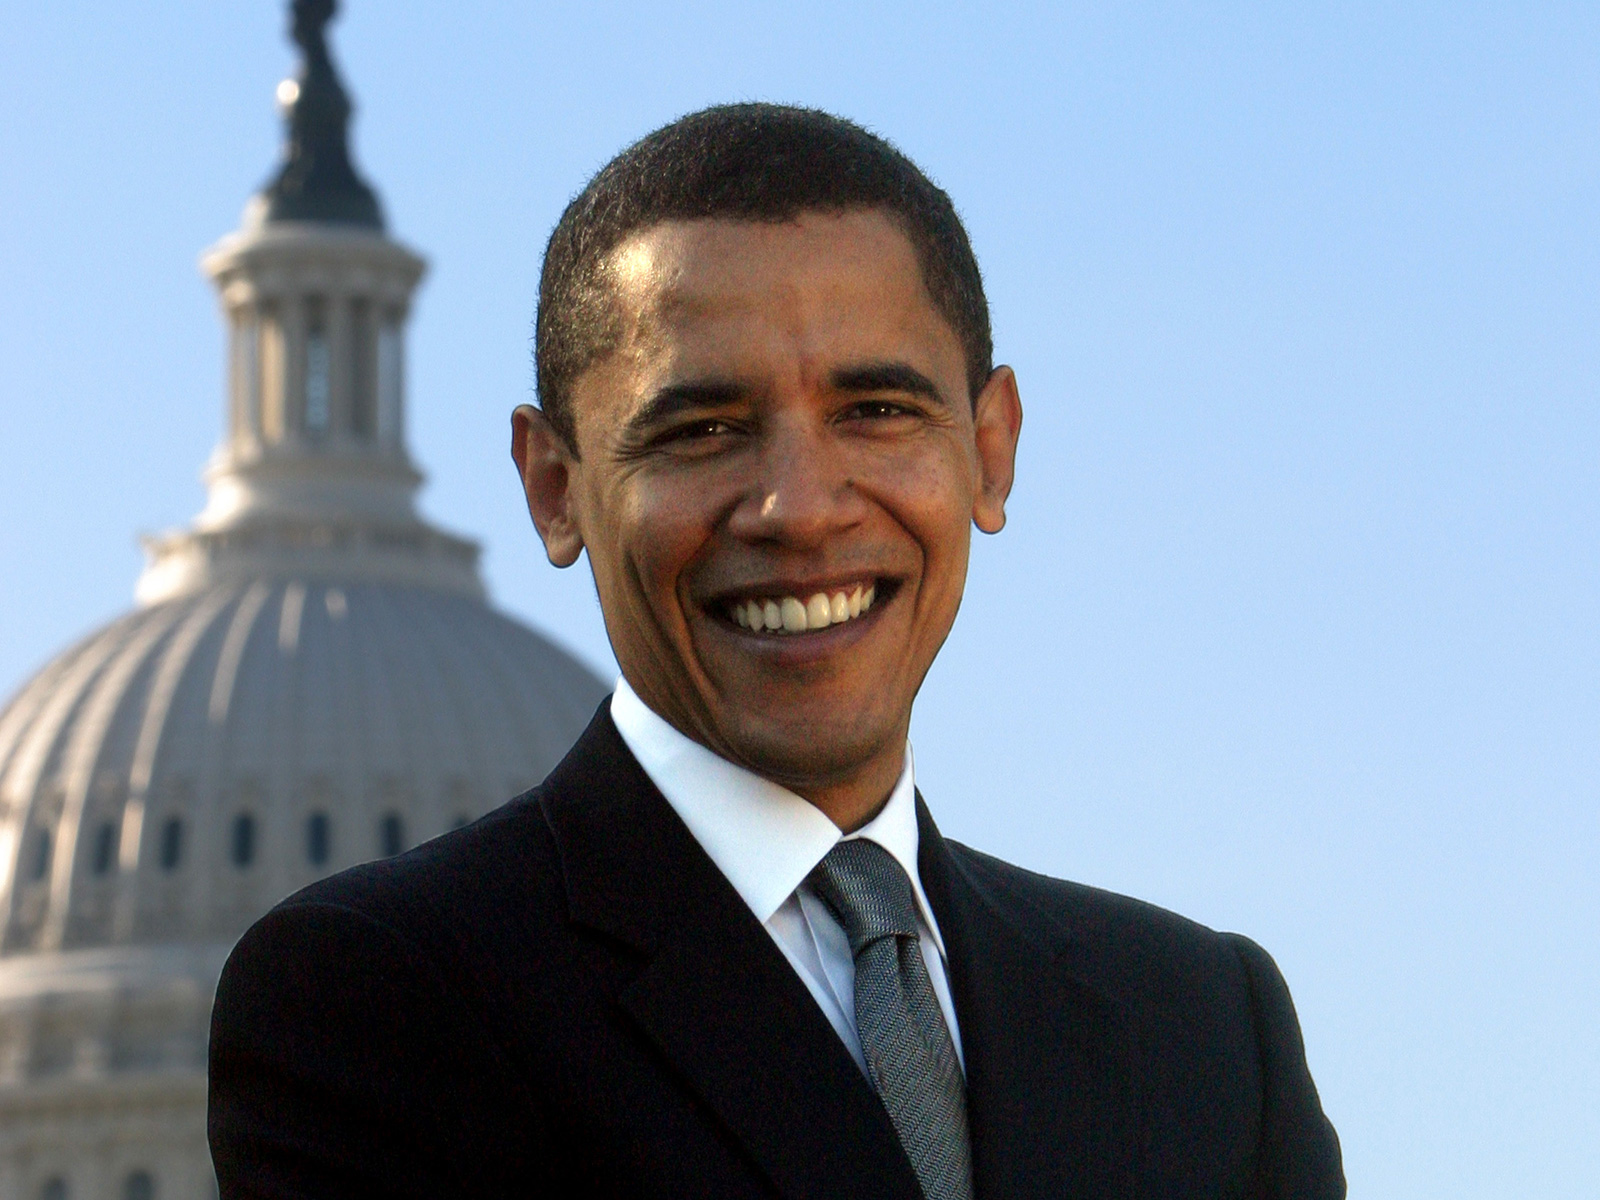 Barack-Obama-Images